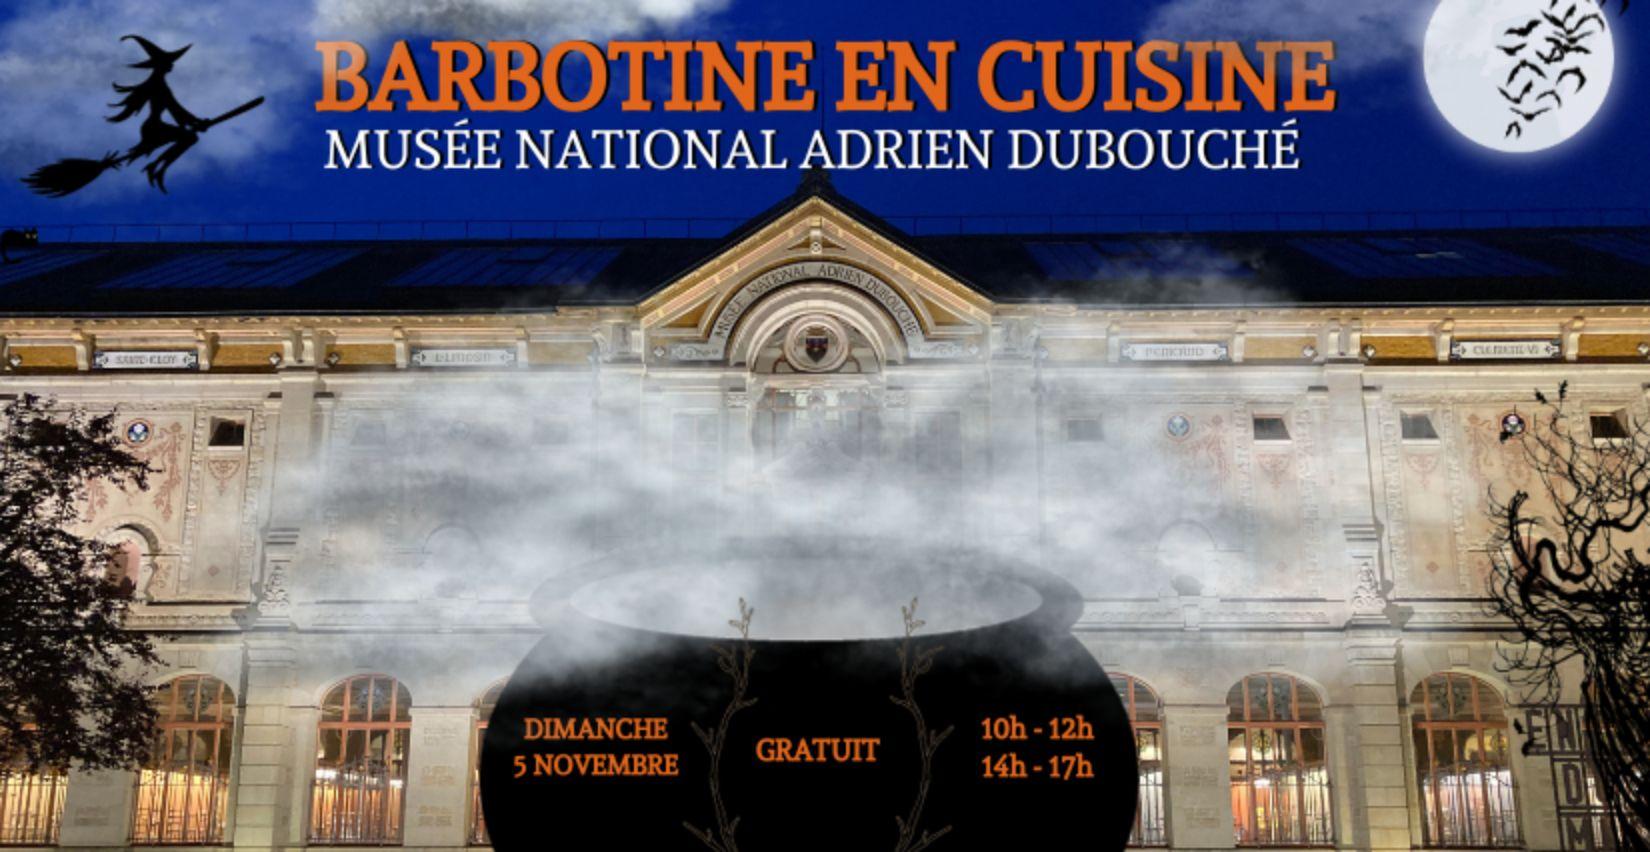 "La sorcière Barbotine en cuisine", Halloween au Musée National Adrien Dubouché à Limoges